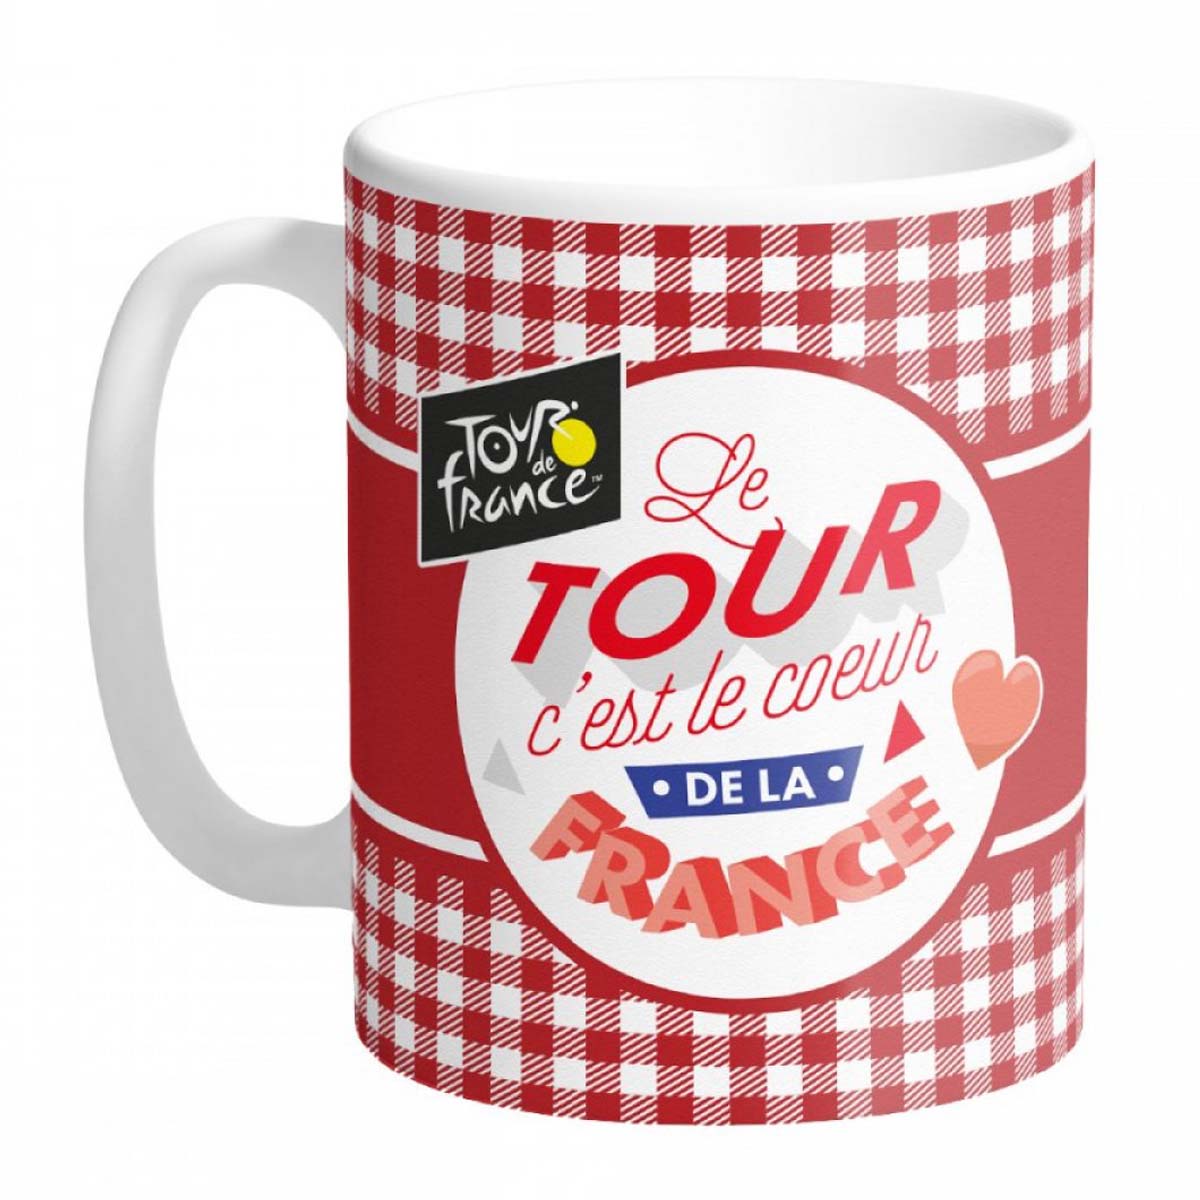 Mug céramique \'Tour de France\' carreaux rouges (c\'est le coeur de la France) - 95x80 mm - [A0857]